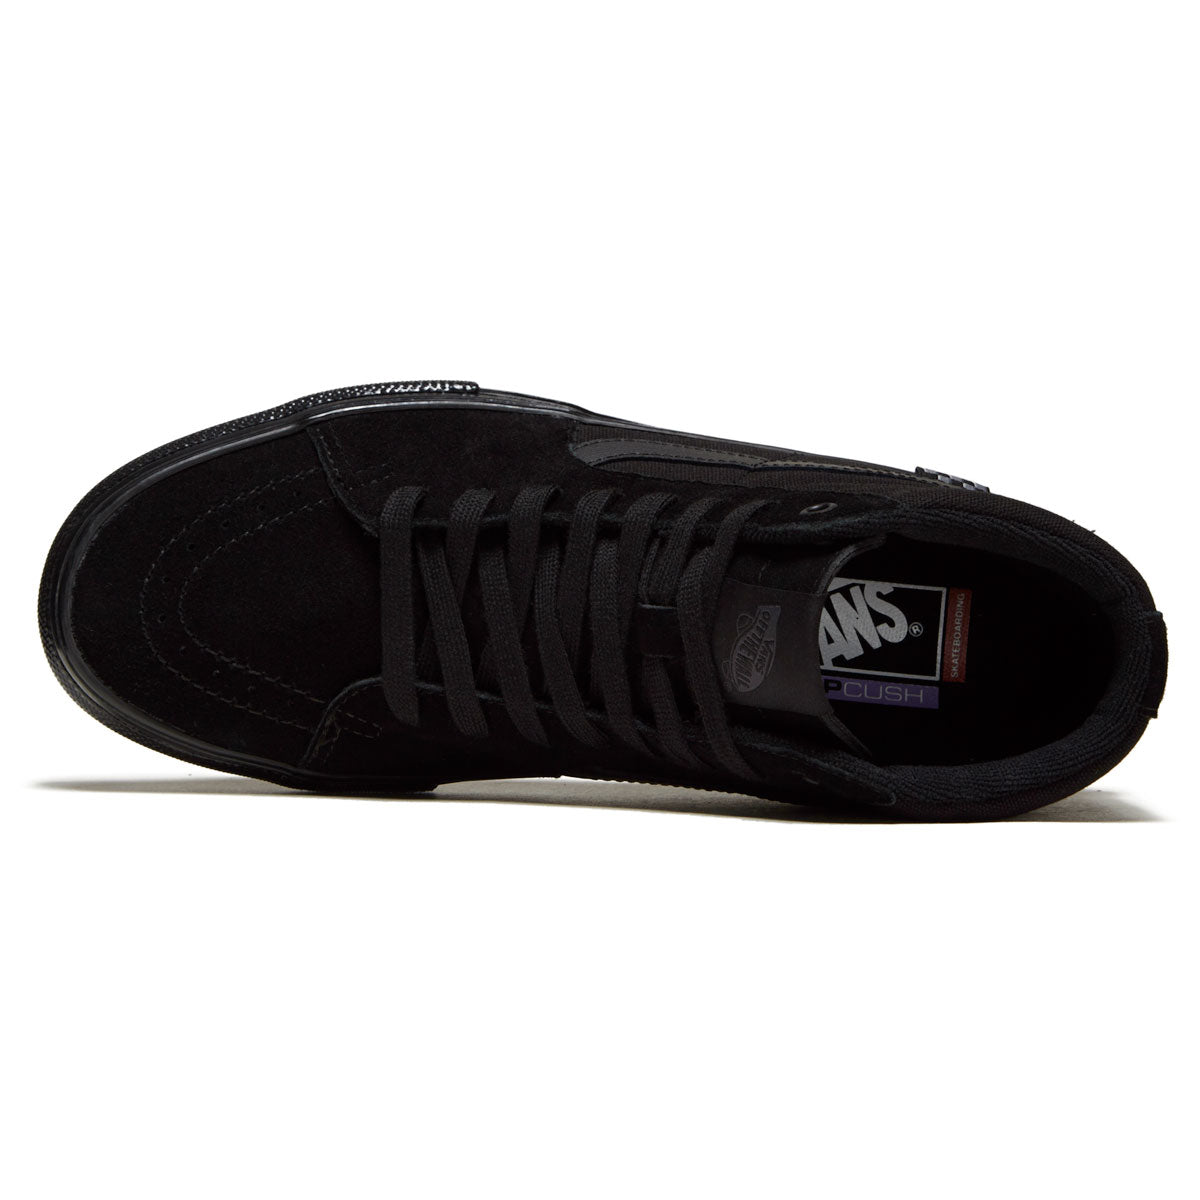 Vans Skate Sk8-hi Shoes - Black/Black image 3